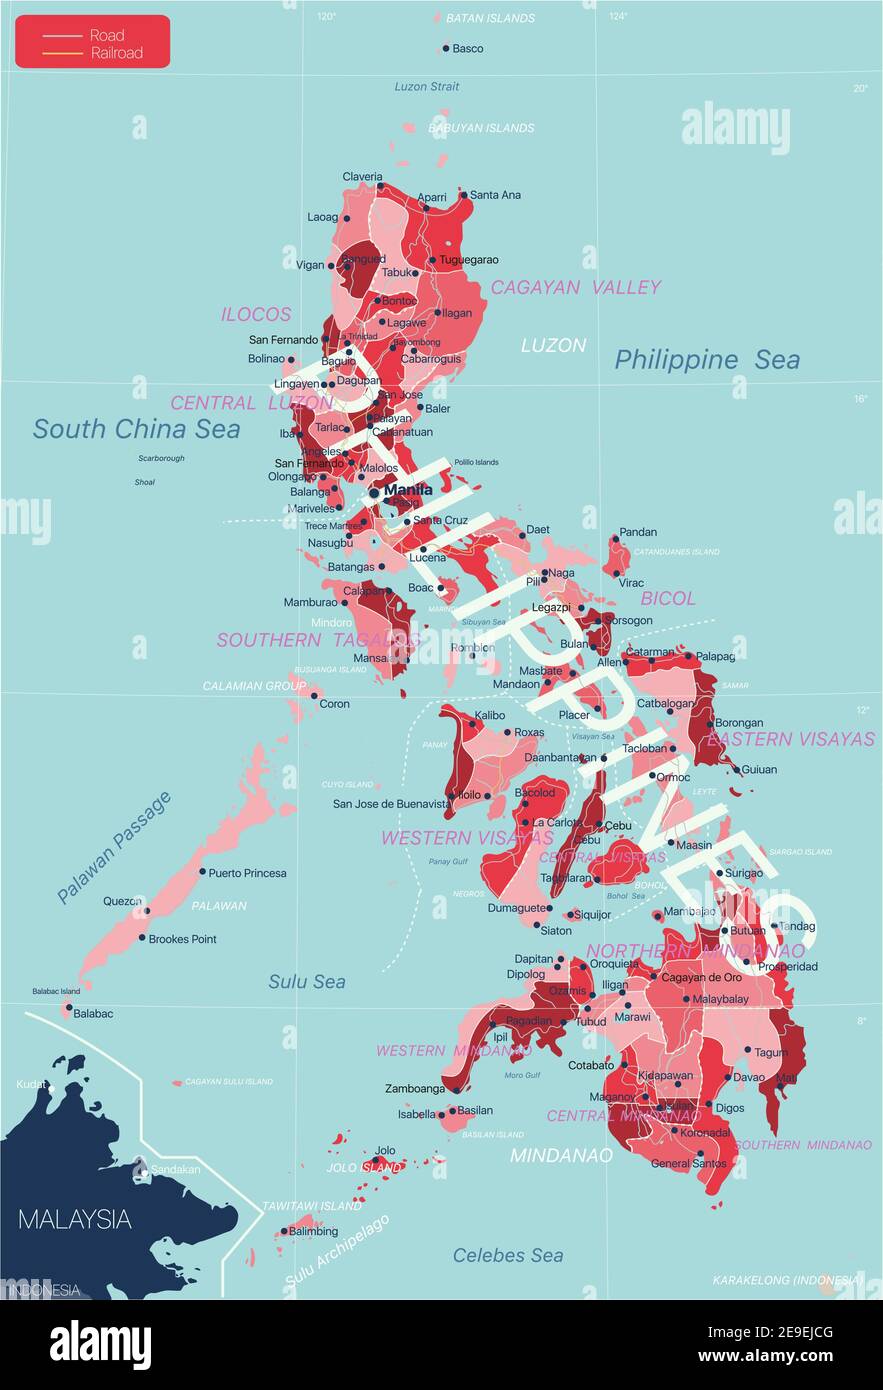 Philippines carte détaillée modifiable avec régions villes, routes et chemins de fer, sites géographiques. Fichier vectoriel EPS-10 Illustration de Vecteur